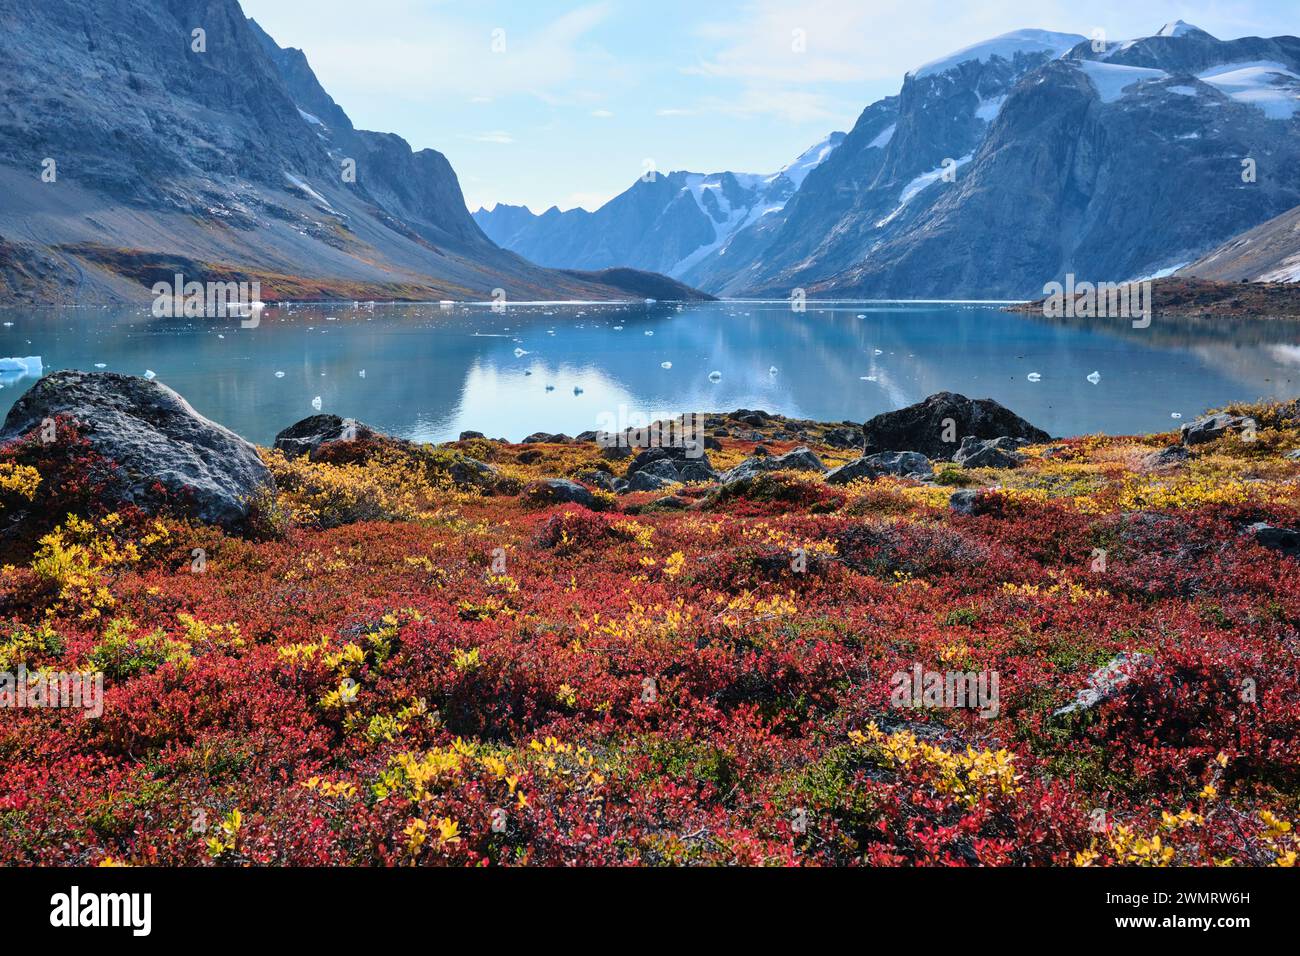 Rot- und Gelbtöne der Herbstvegetation in der Tundra bei Dronning Marie Dal bilden den Vordergrund für ruhige Gewässer des Fjords bei Skoldungen, Ostgrönland Stockfoto